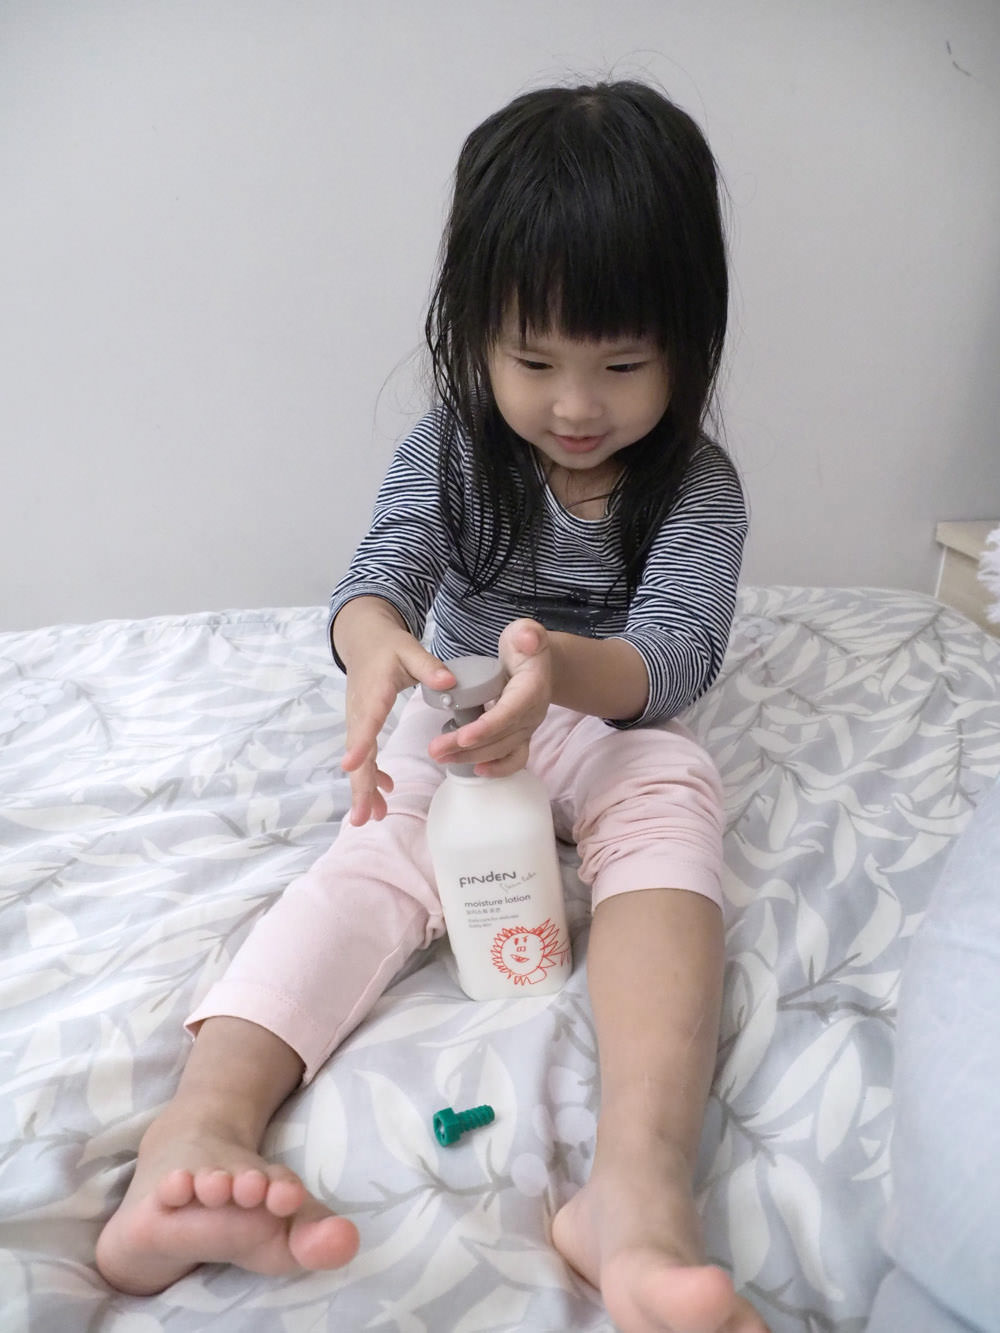 [啾團] Finden嬰兒界的夢幻用品.好用到讓人會想持續回購的韓國頂級嬰幼兒護膚(這次只有防曬及小罐乳液)